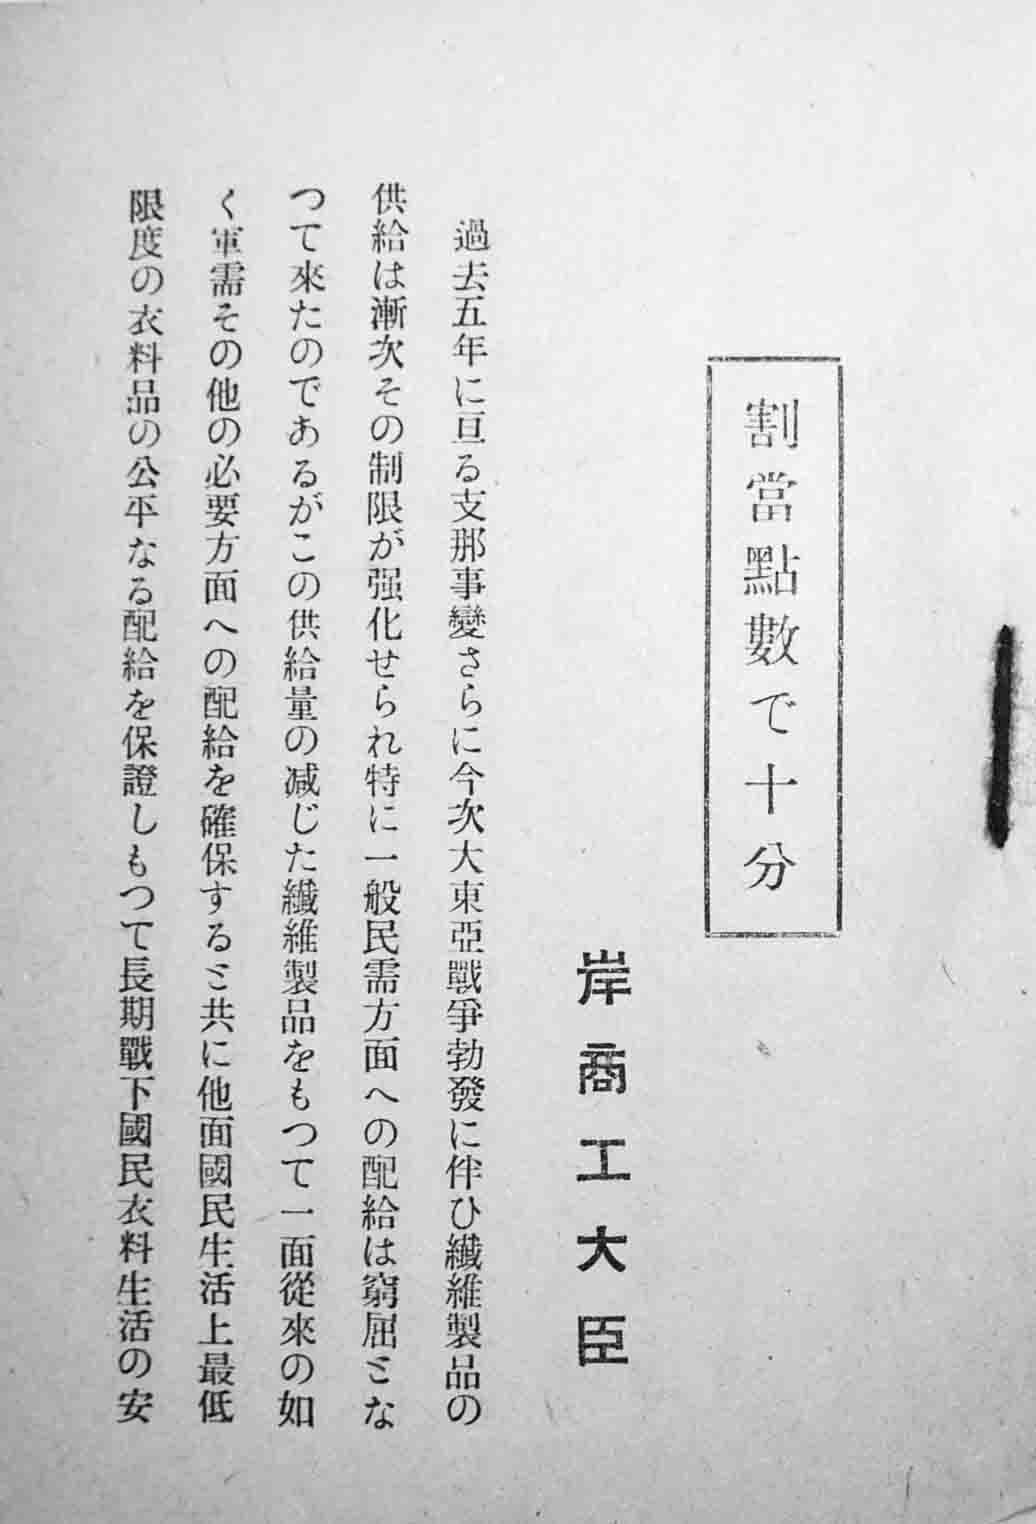 衣料切符制早わかり 日本織物新聞社出版部 昭和17年 古書 古群洞 Kogundou Jcom Zaq Ne Jp